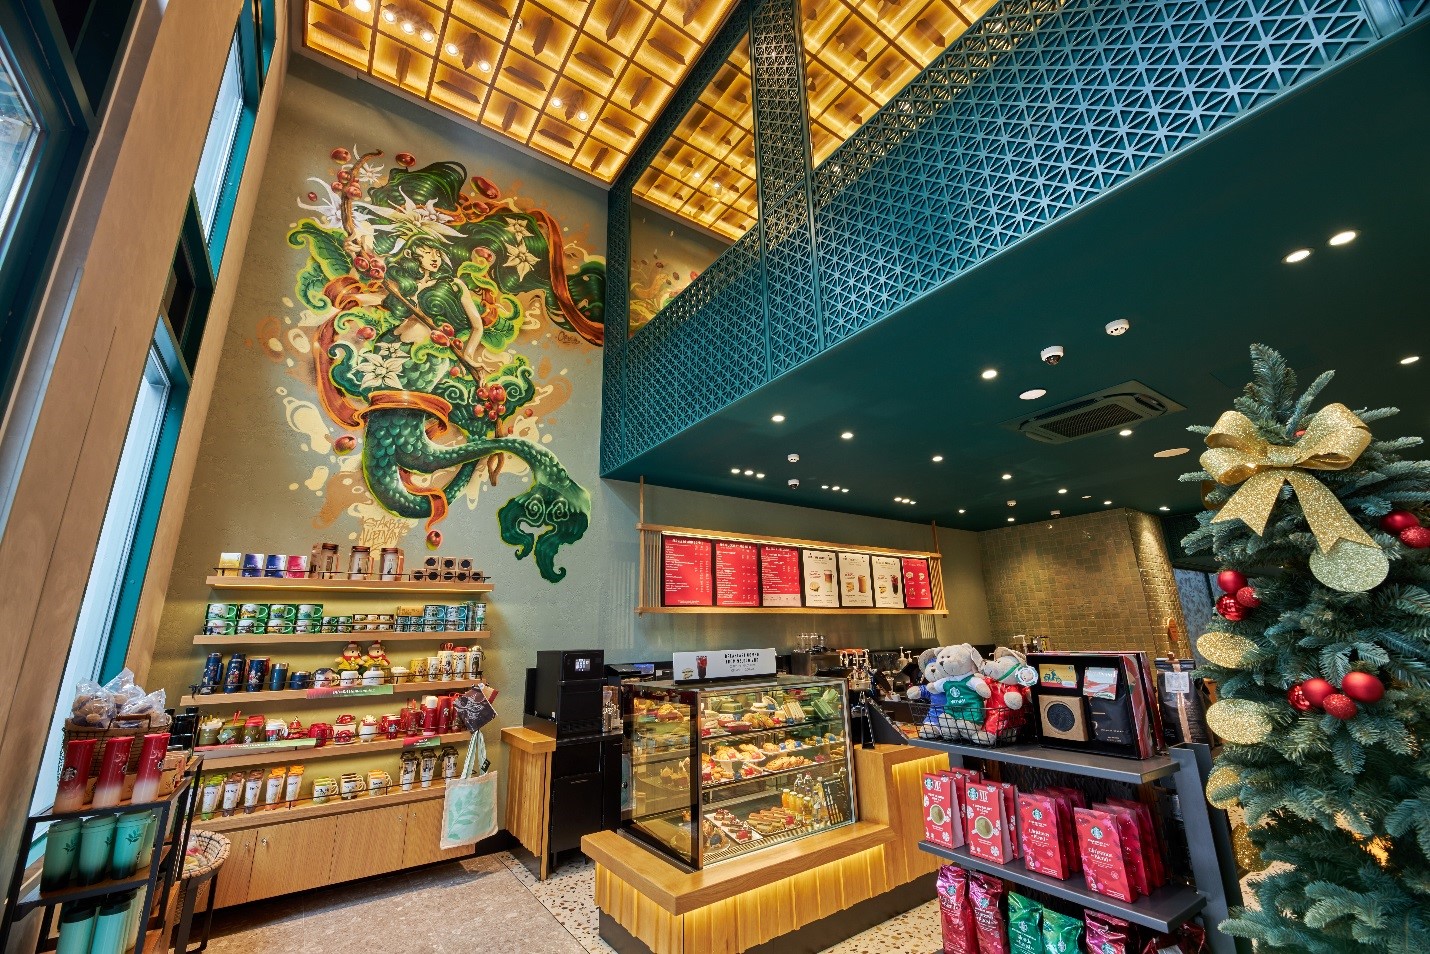 Kinh tế - Starbucks Vietnam chính thức mở cửa hàng cộng đồng đầu tiên hỗ trợ người trẻ hướng nghiệp (Hình 3).